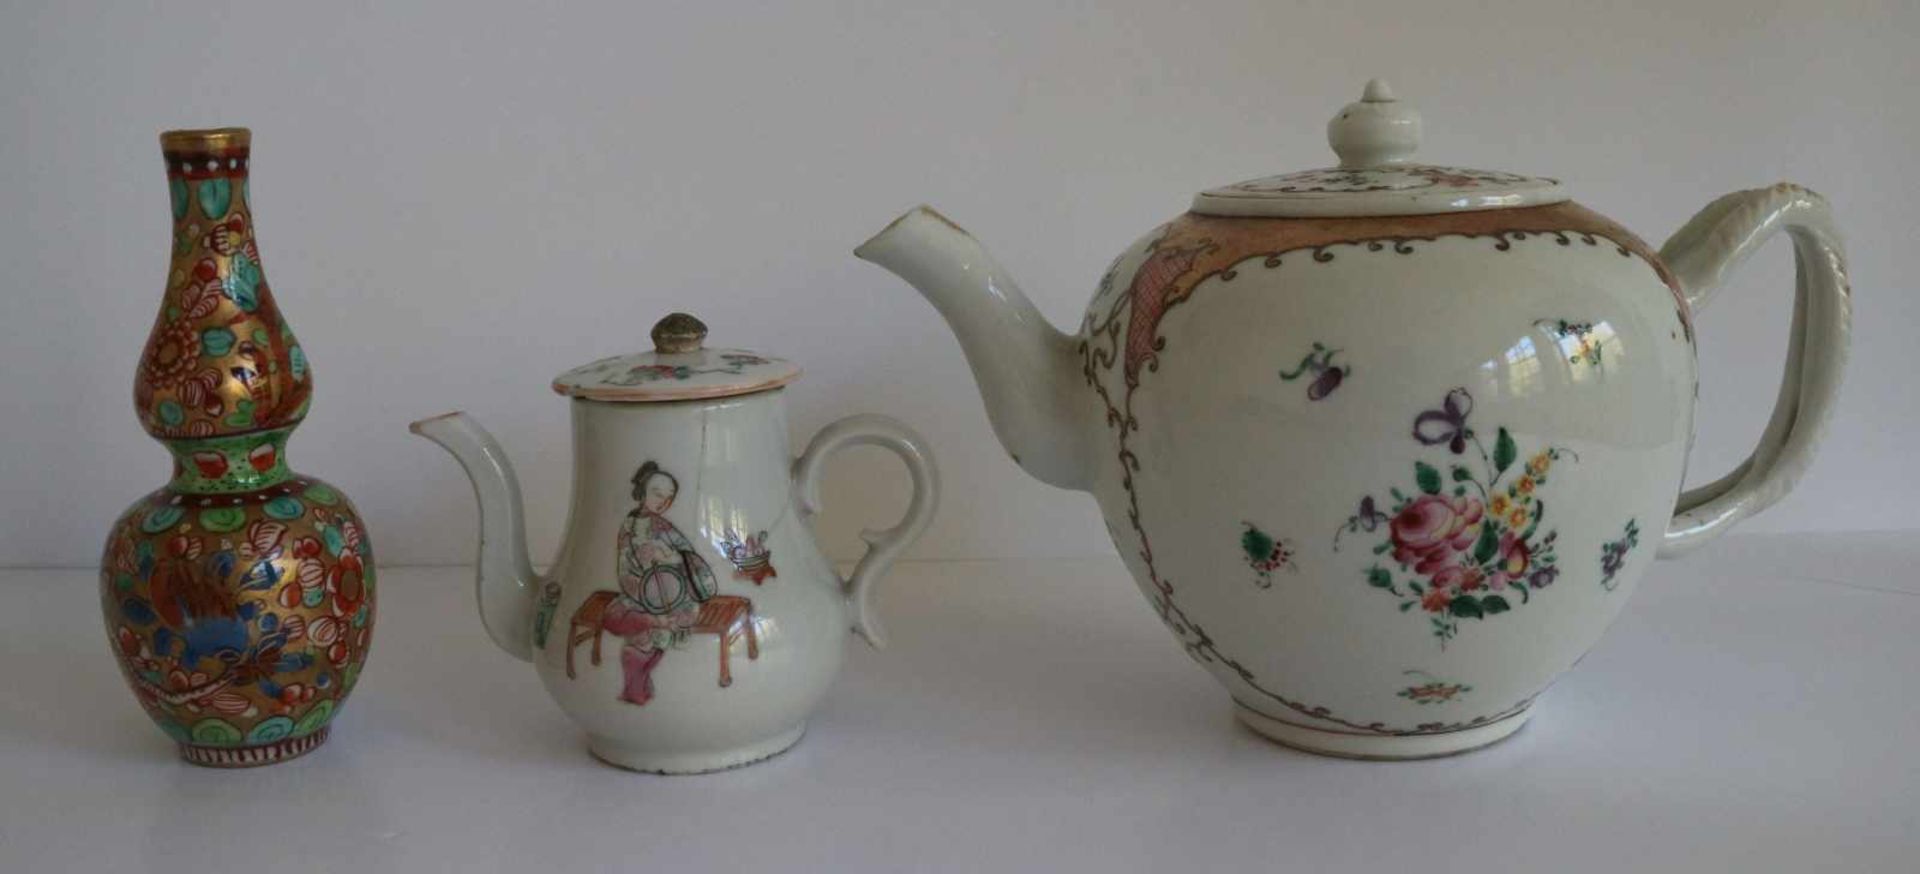 Porcelain Teapot Chine de commande, calebas vase Samson and teapot (crack) H 9,5 tot 13,5 cm